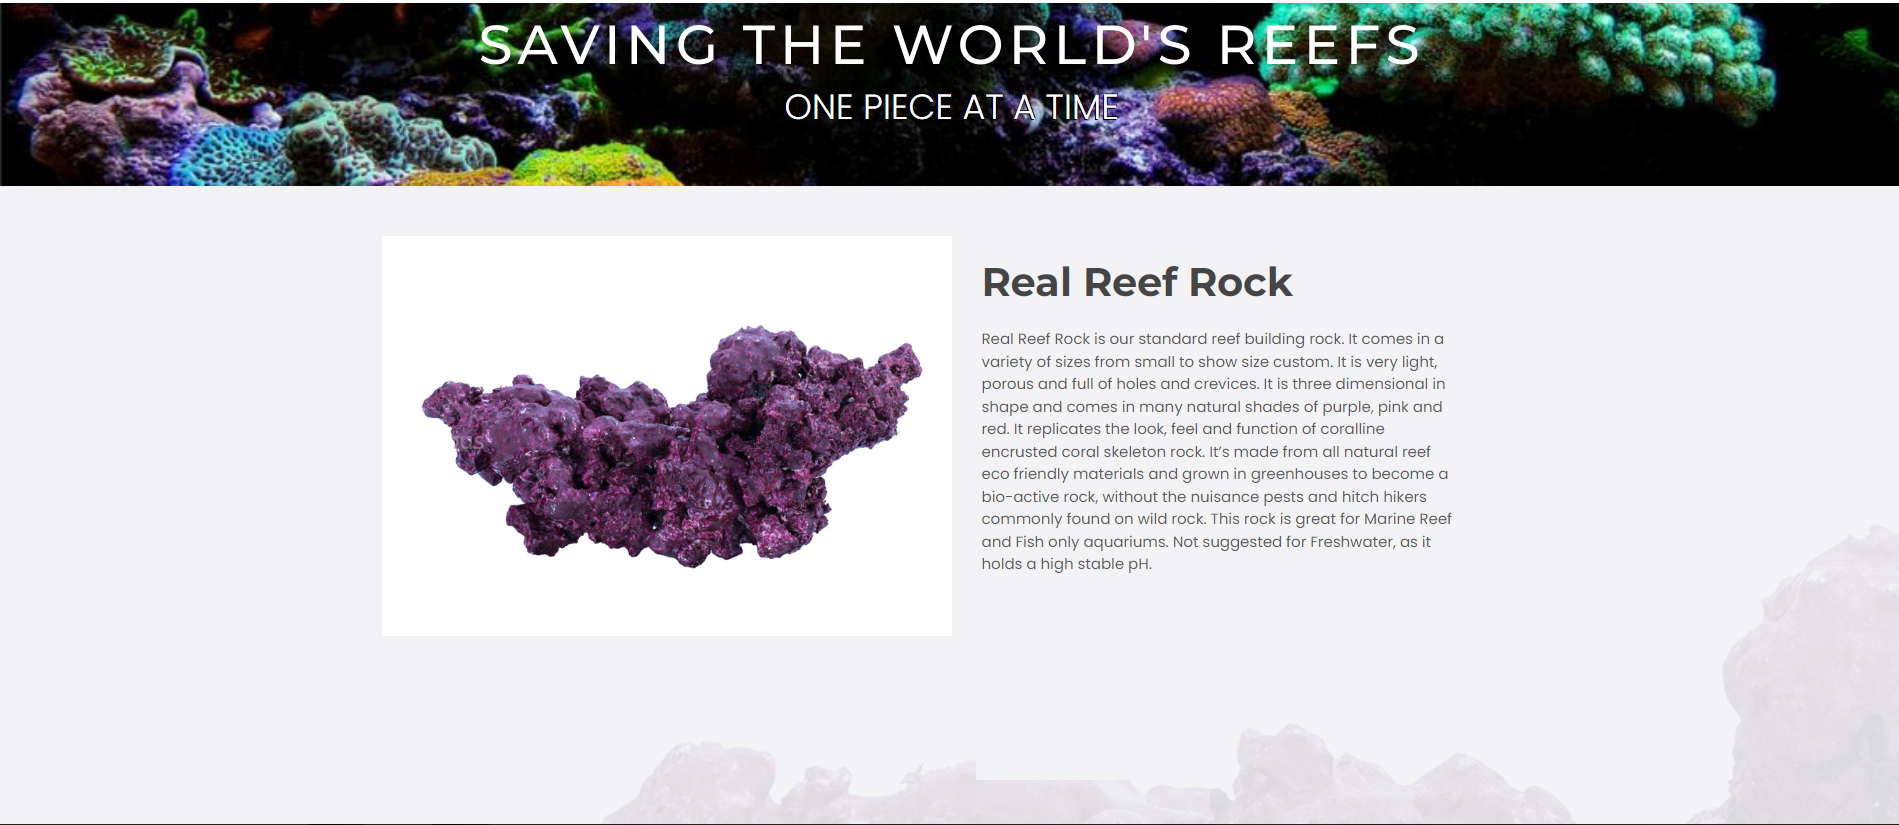 Real Reef Rock1 1